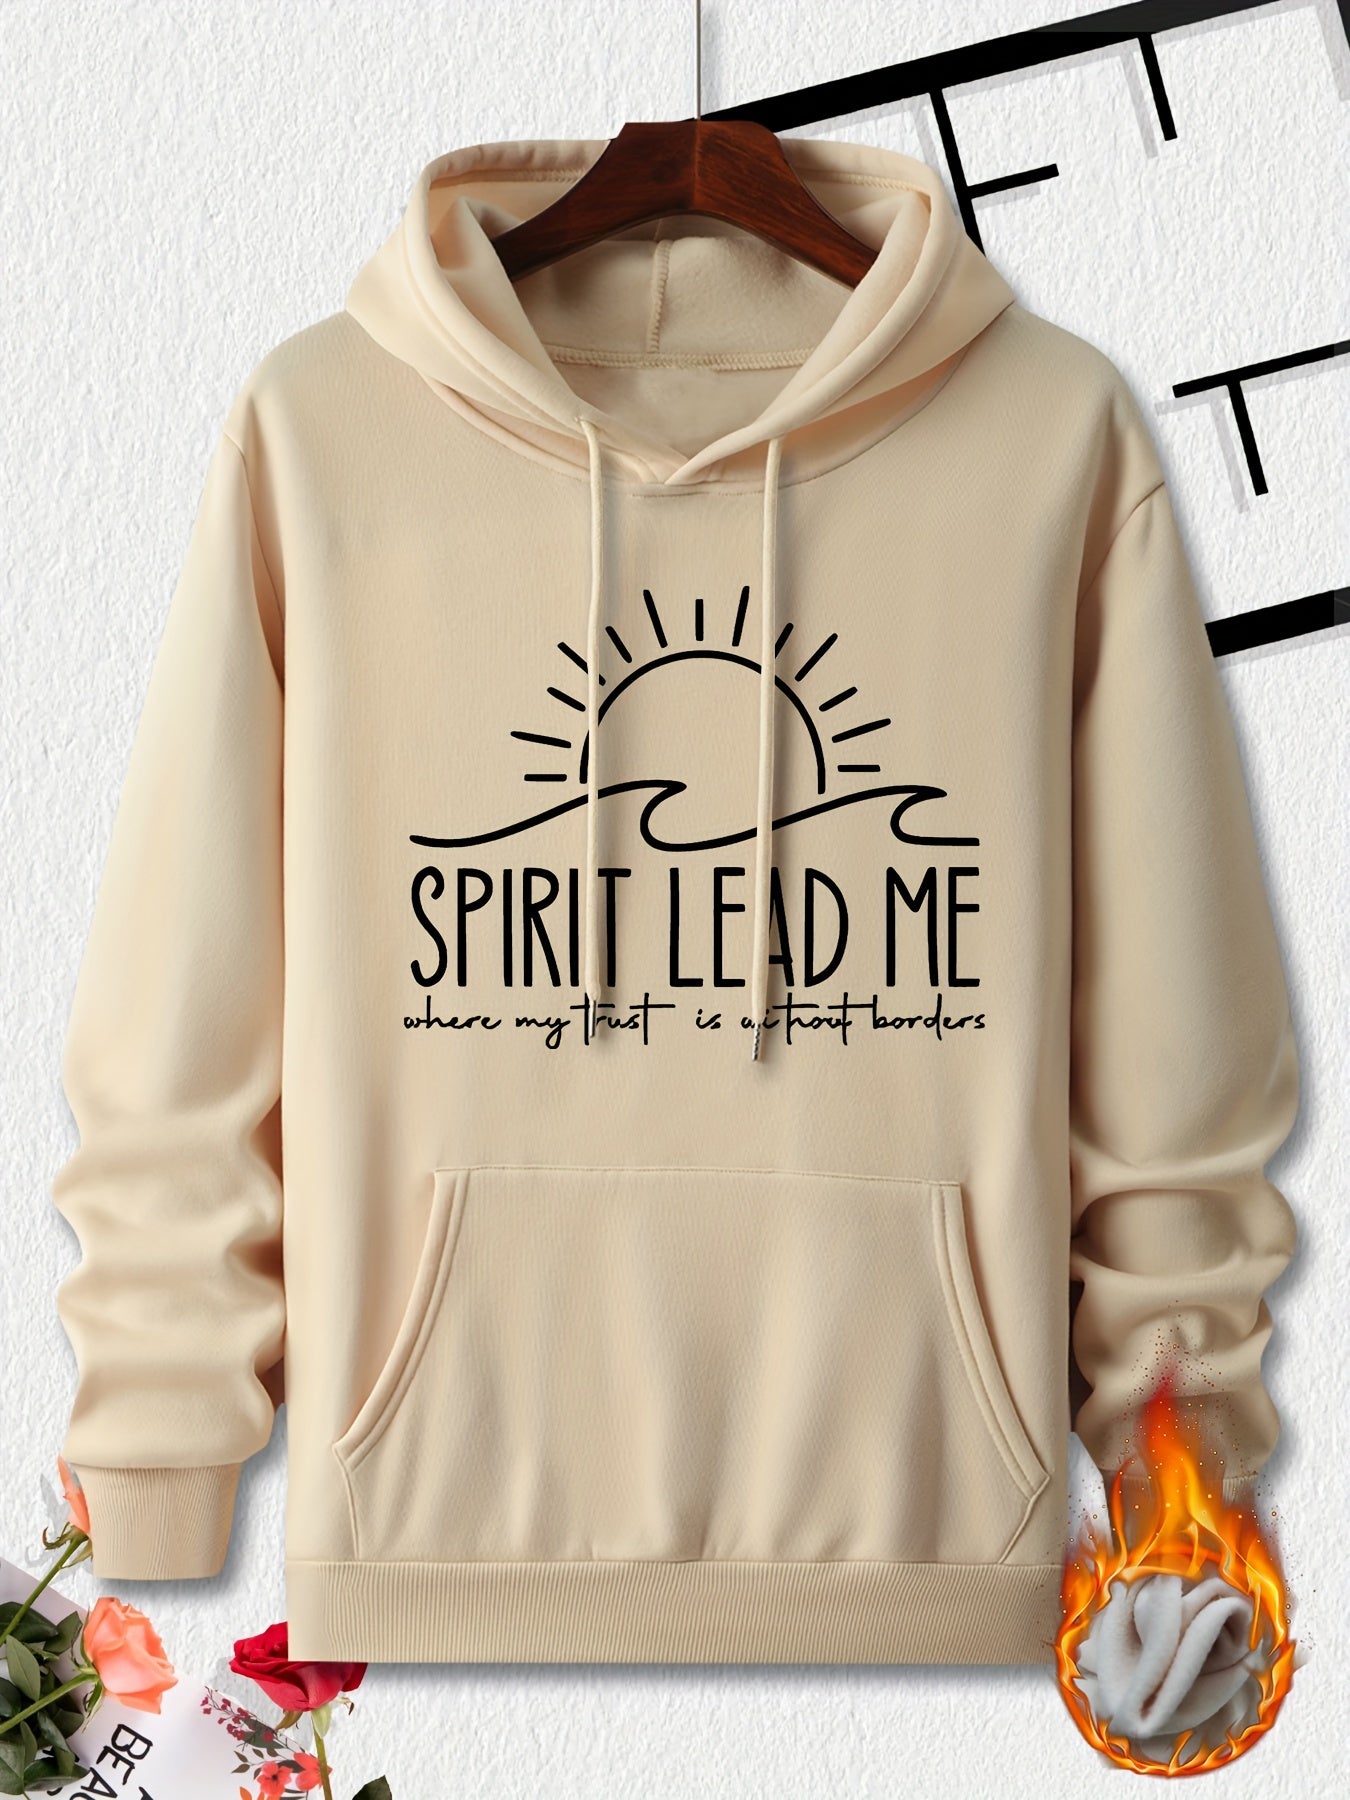 Spirit Lead Me Men's Christian Pullover Hooded Sweatshirt claimedbygoddesigns